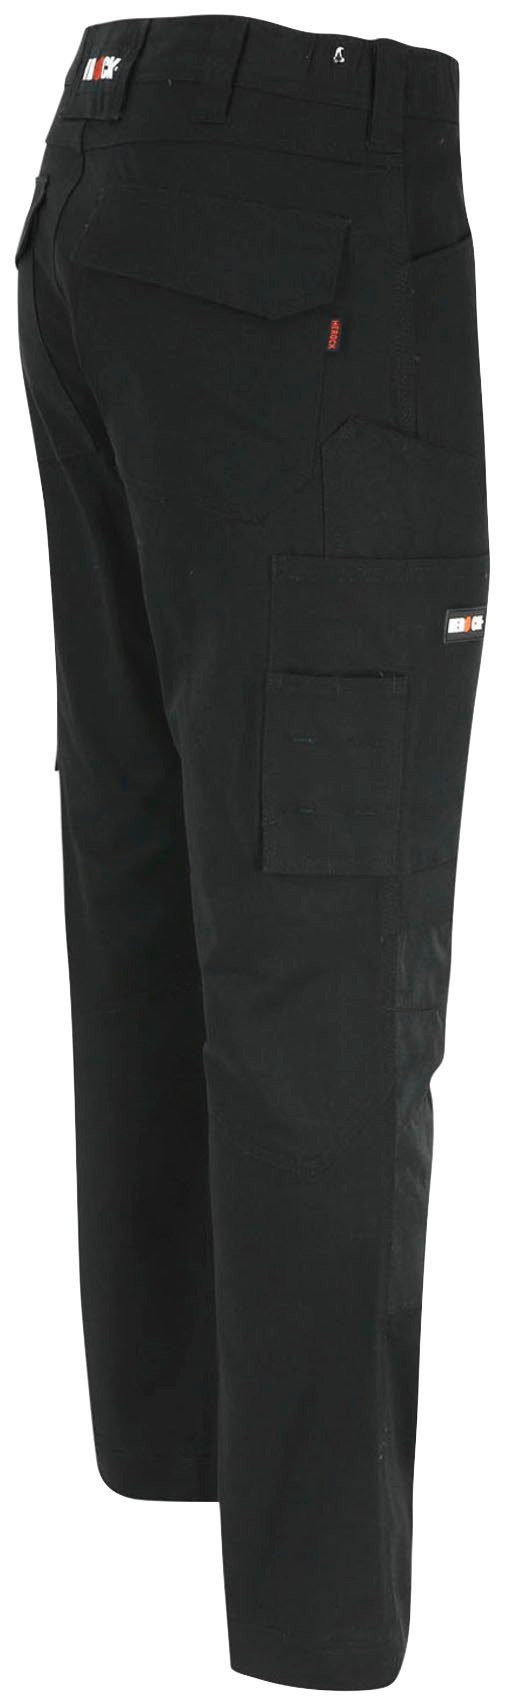 Multi-Pocket, Arbeitshose Slim schwarz Herock wasserabweisend 2-Wege-Stretch, Fit Passform, DERO